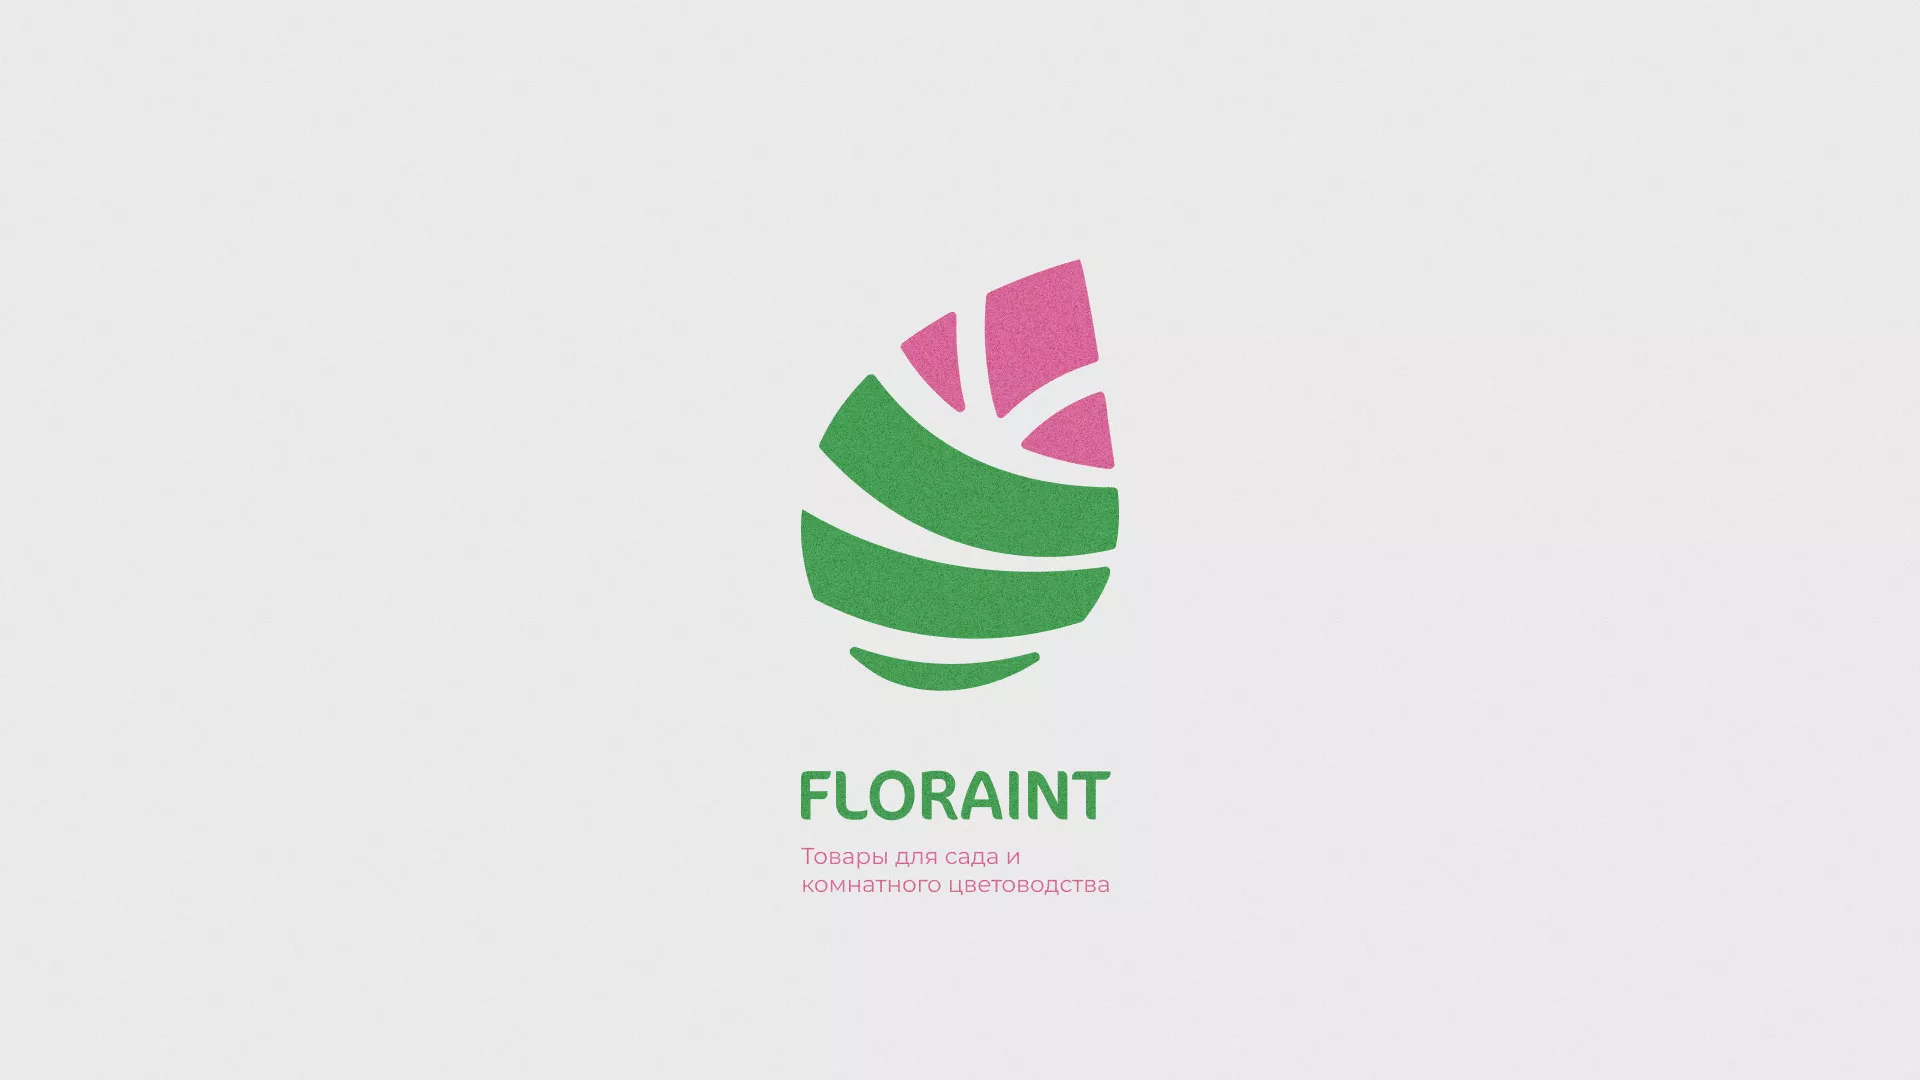 Разработка оформления профиля Instagram для магазина «Floraint» в Мариинске